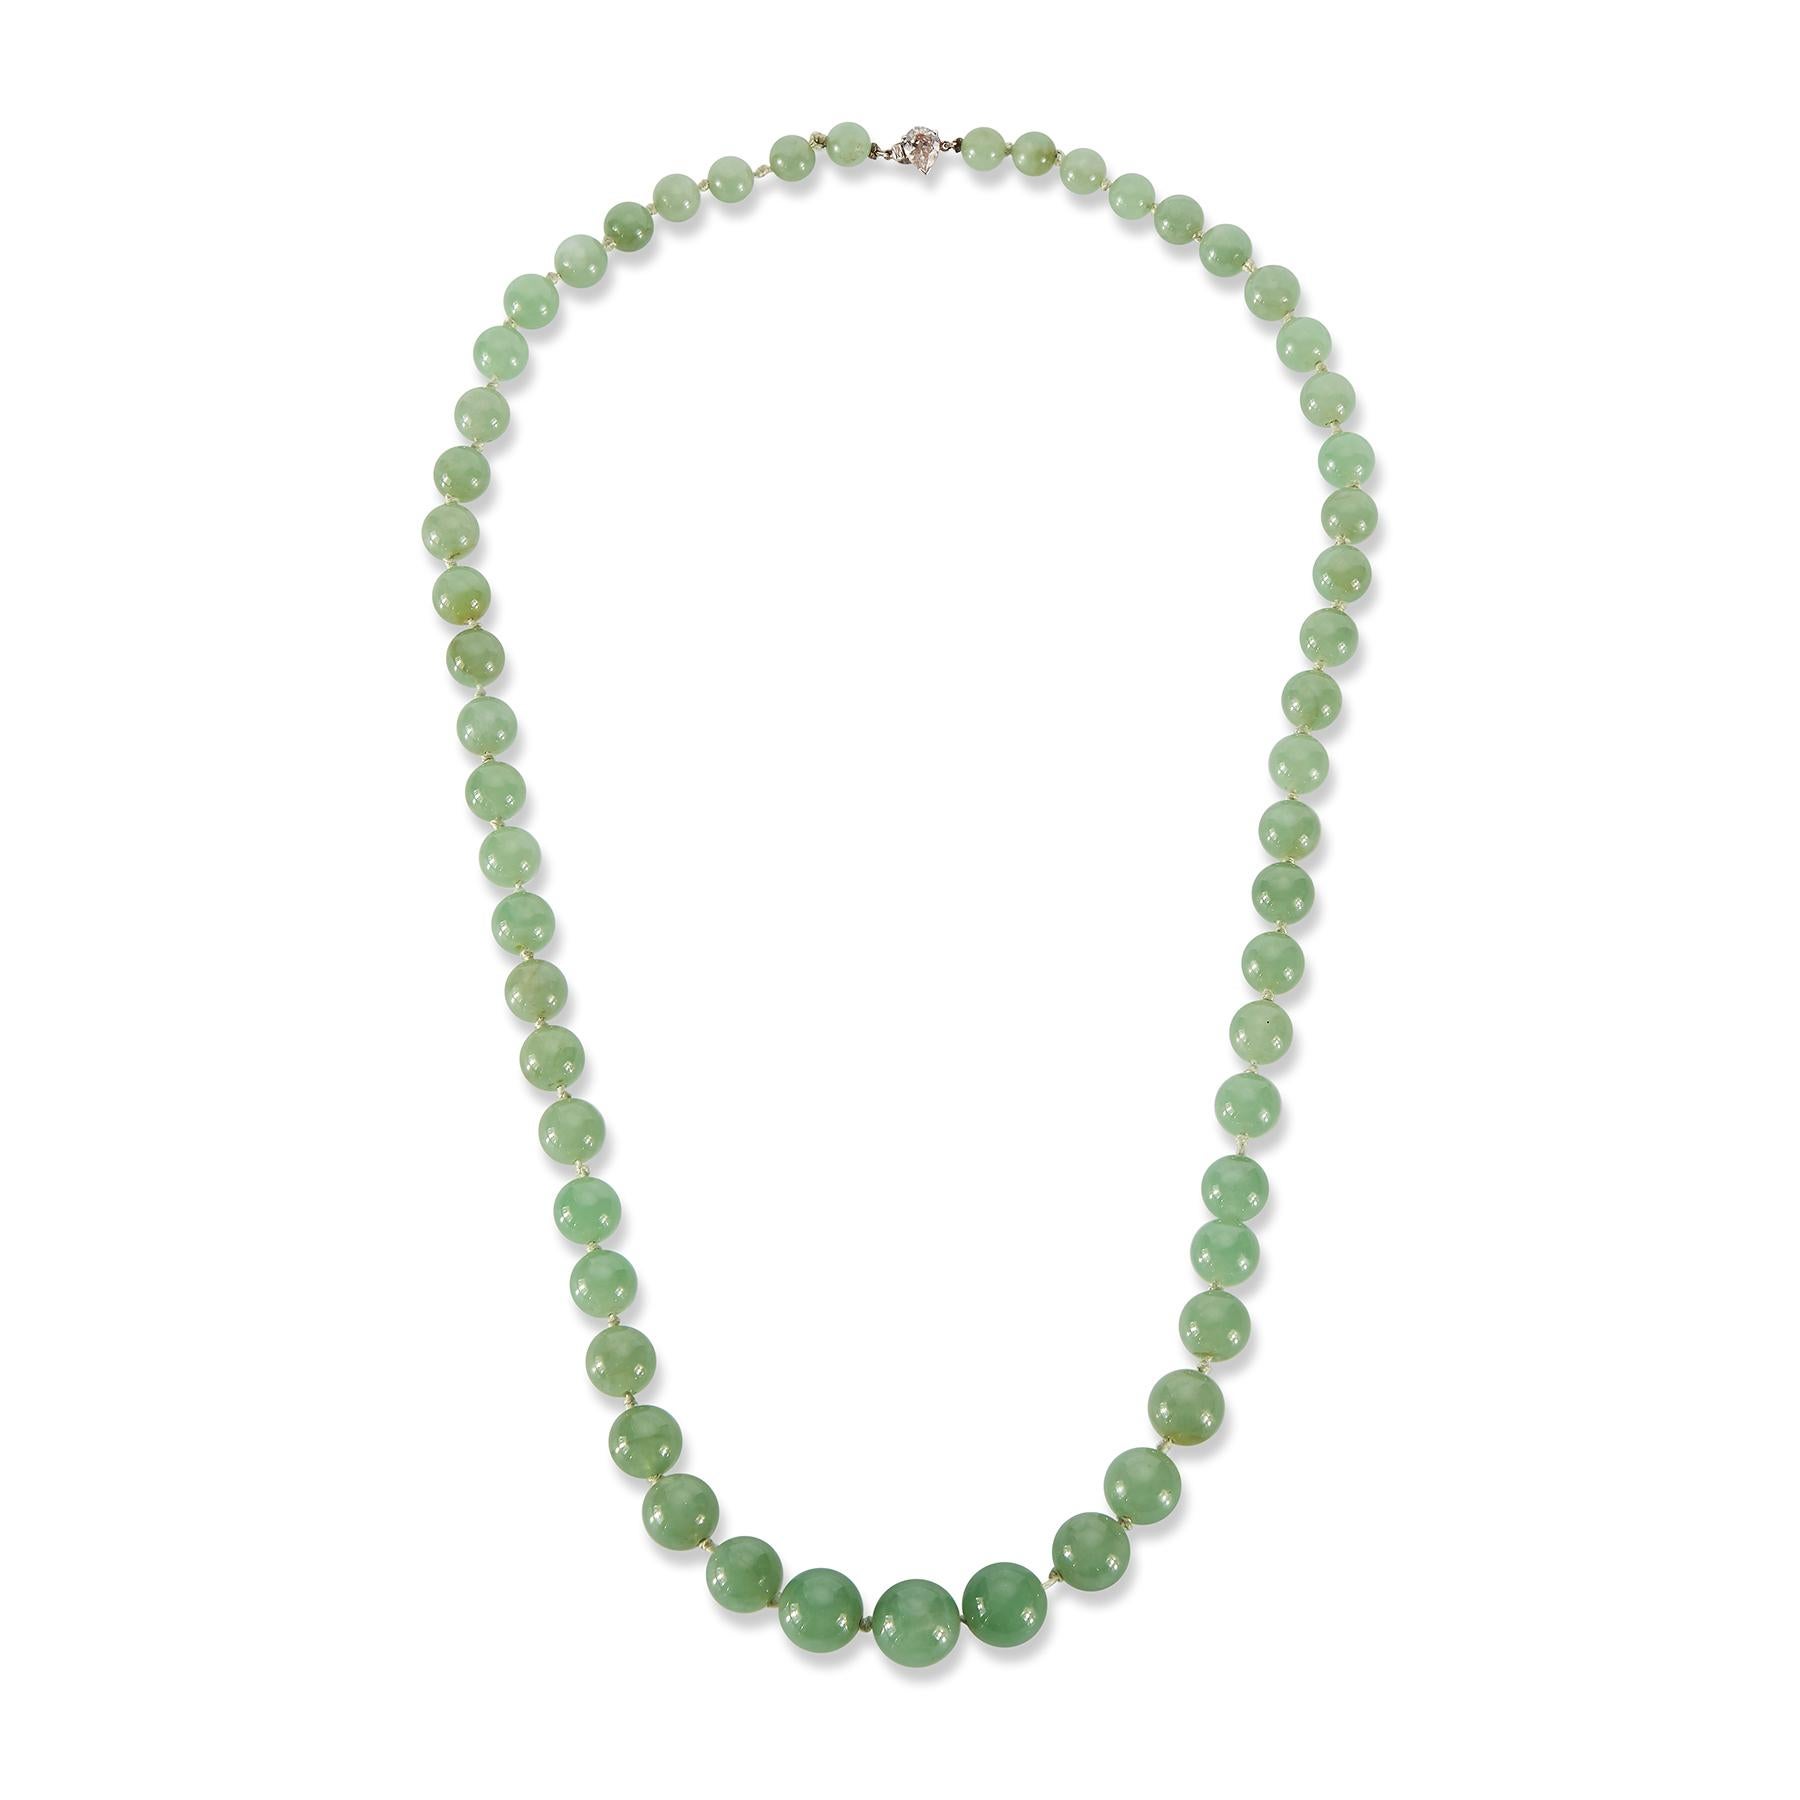 Zertifizierte natürliche Jadeit Jade Perlenkette

Diese Halskette ist mit durchscheinenden, runden, grünen Perlen und einem birnenförmigen Diamantverschluss besetzt.

Mit GIA-Zertifikat, das besagt, dass die Jade naturbelassen und unbehandelt